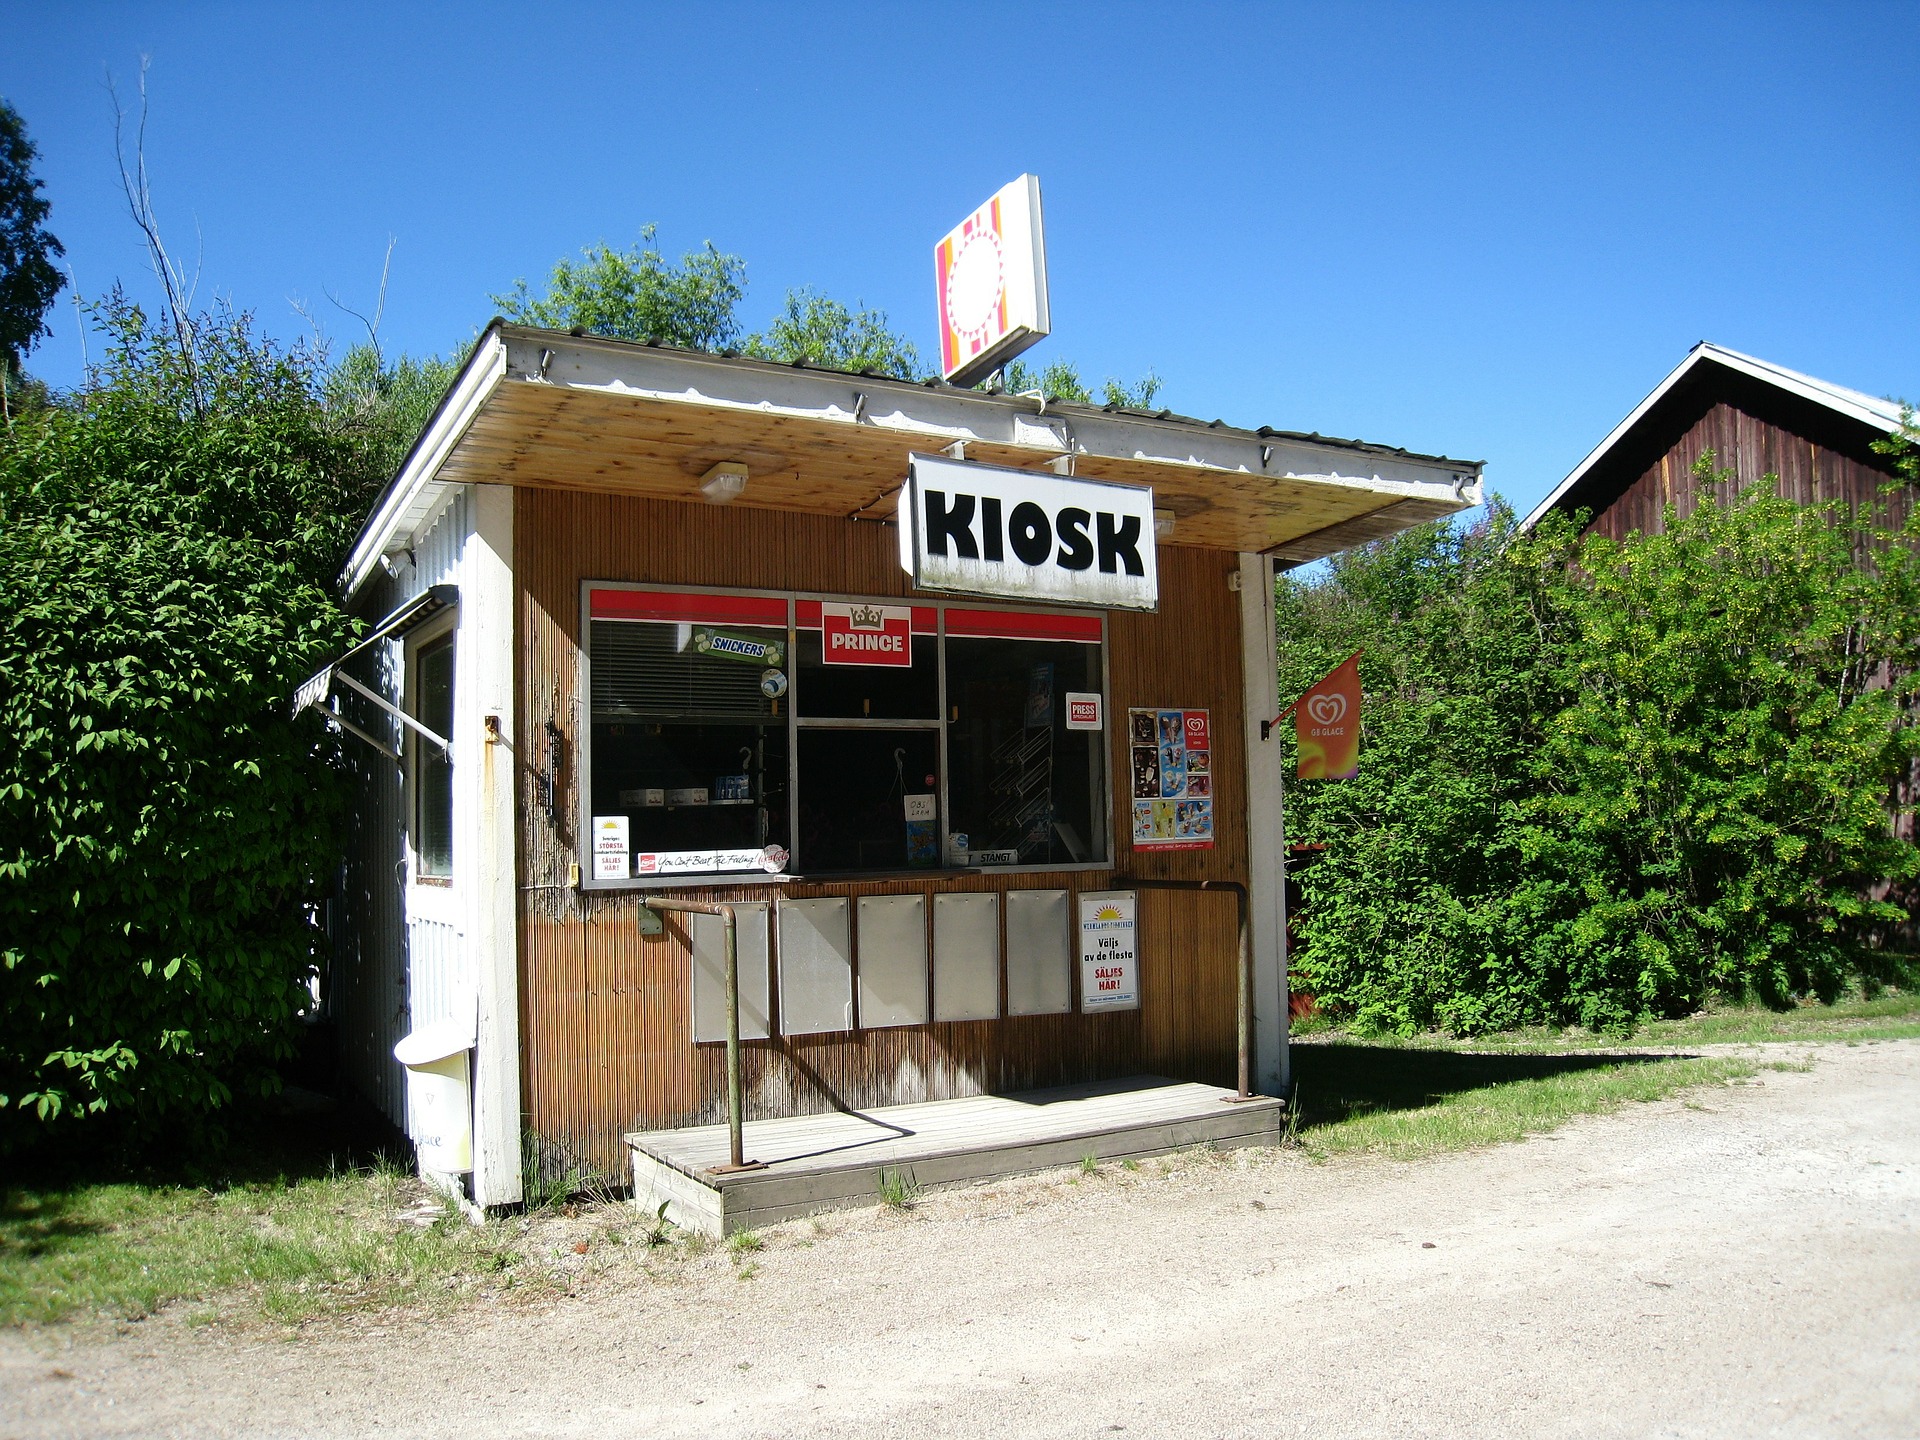 Bild von einem Kiosk